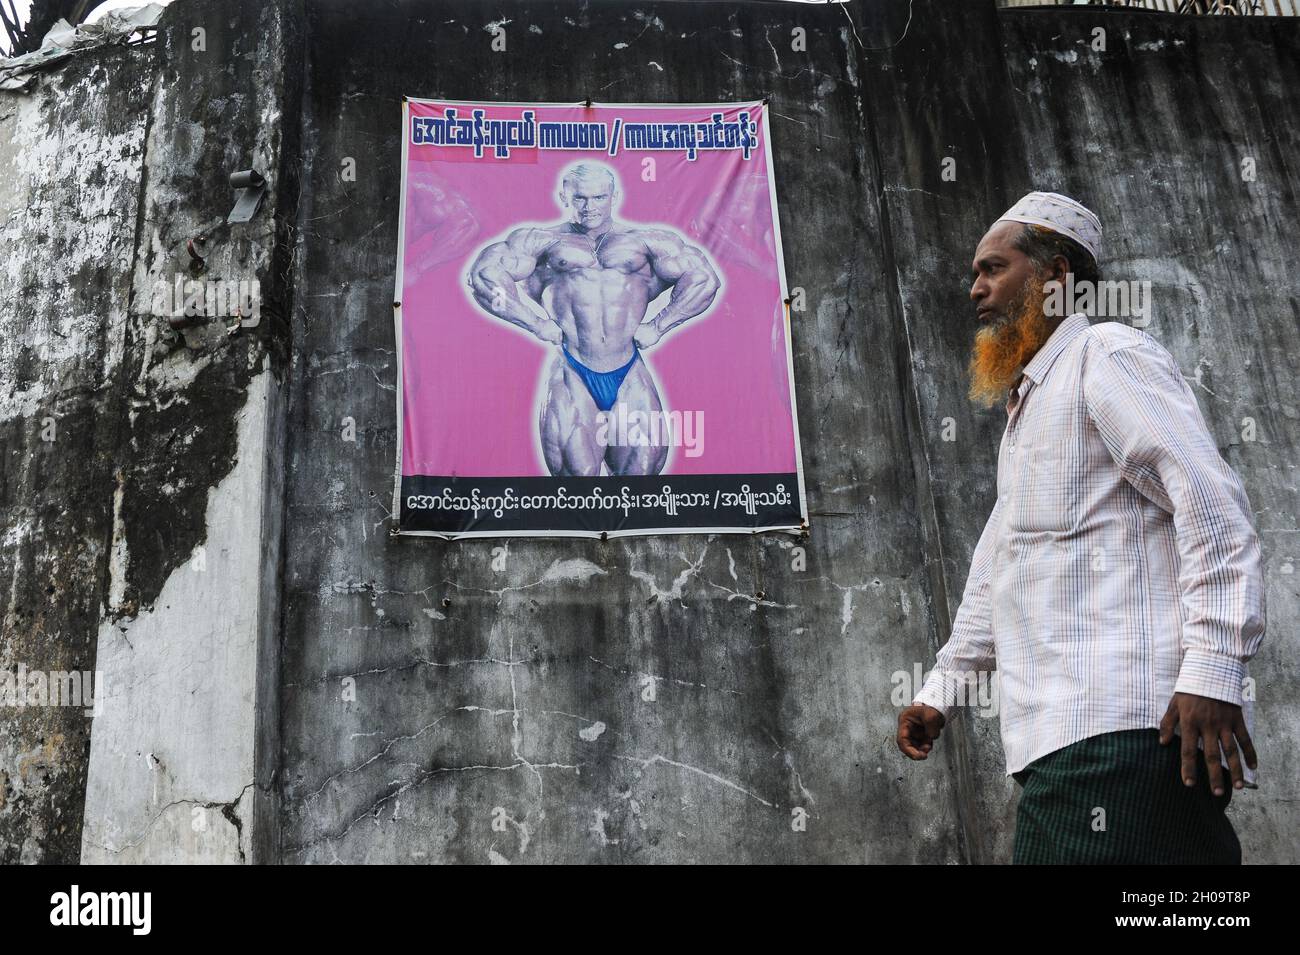 '11.10.2013, Myanmar, , Yangon - un uomo musulmano che indossa un tradizionale takke cammina accanto a un muro con un poster che fa pubblicità a un evento bodybuilding. 0SL131011D Foto Stock